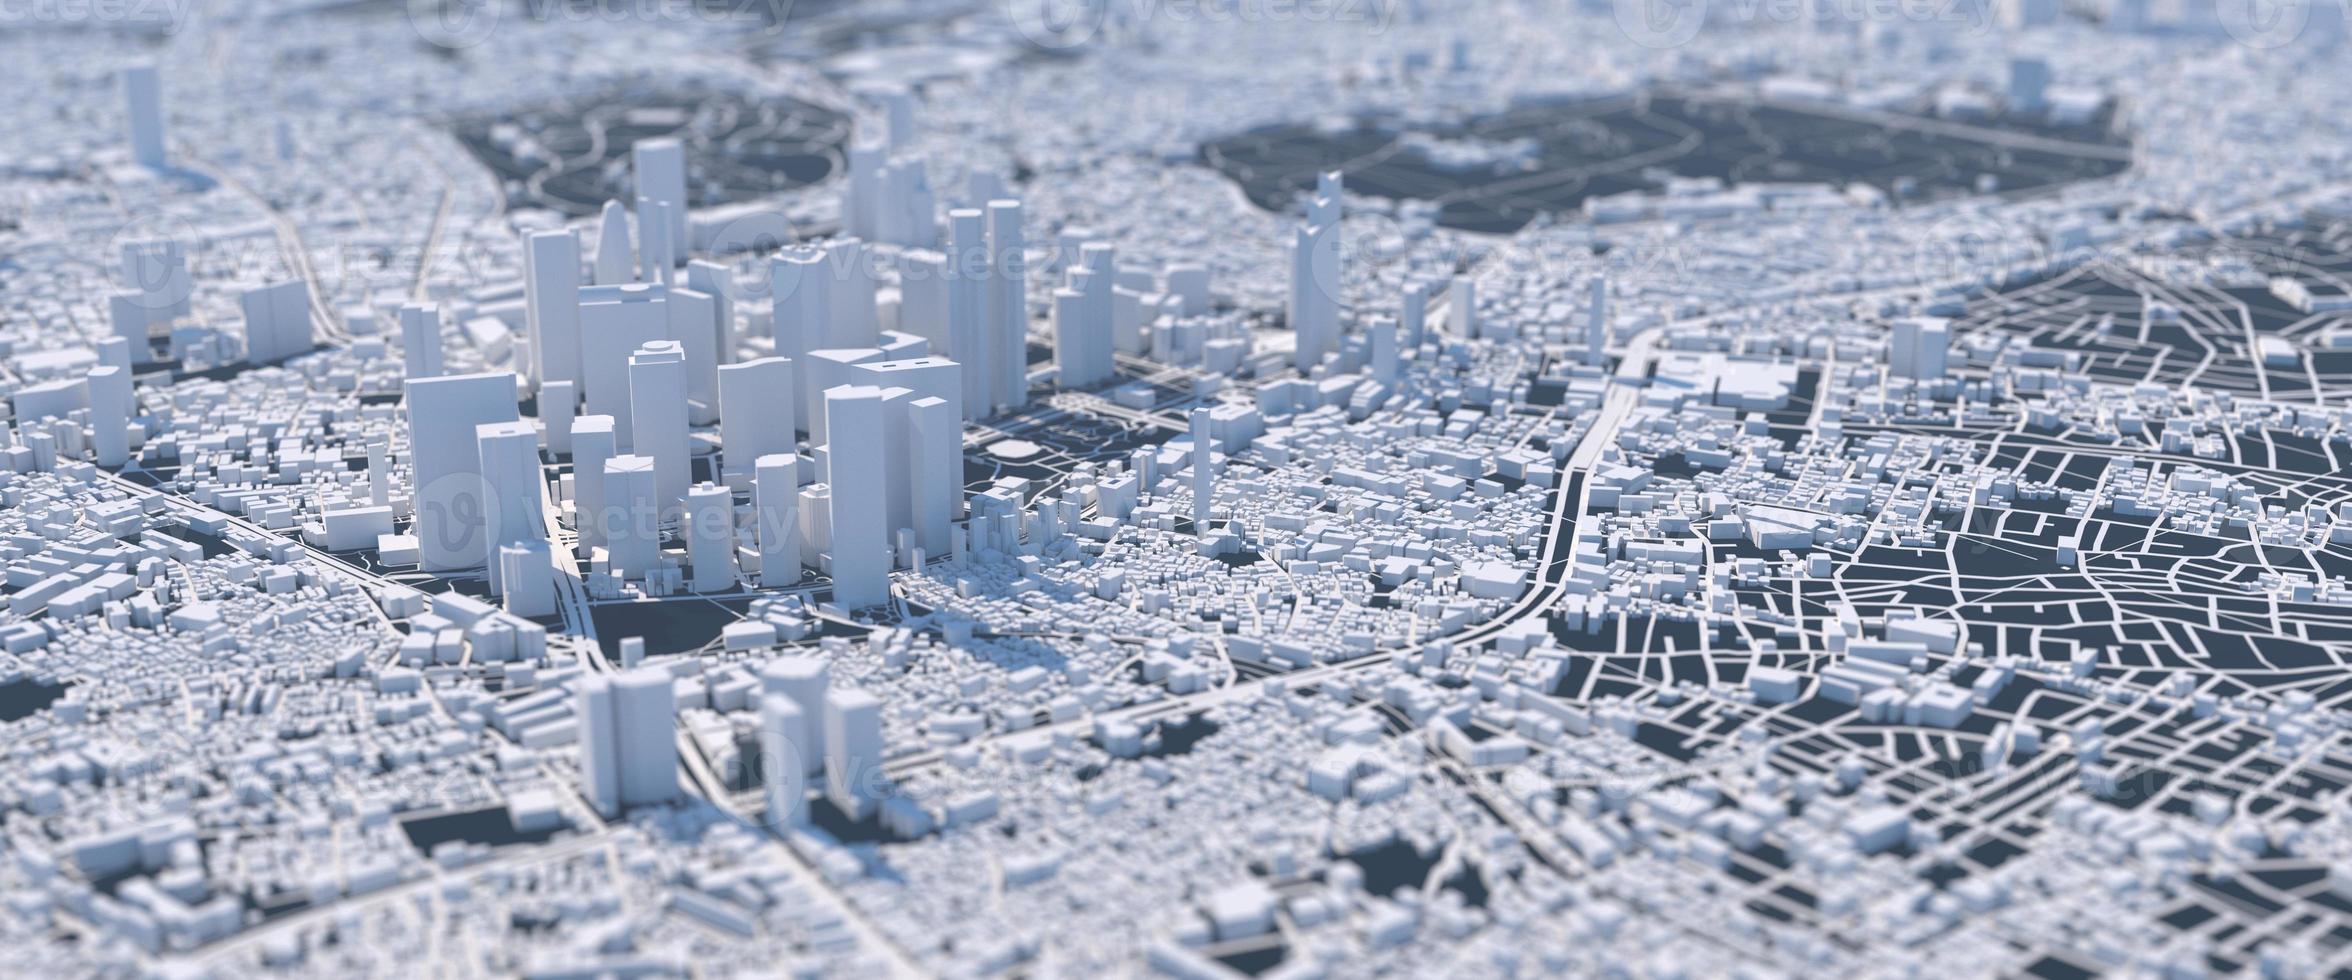 gran ciudad del futuro ilustración con perspectiva distorsionada foto